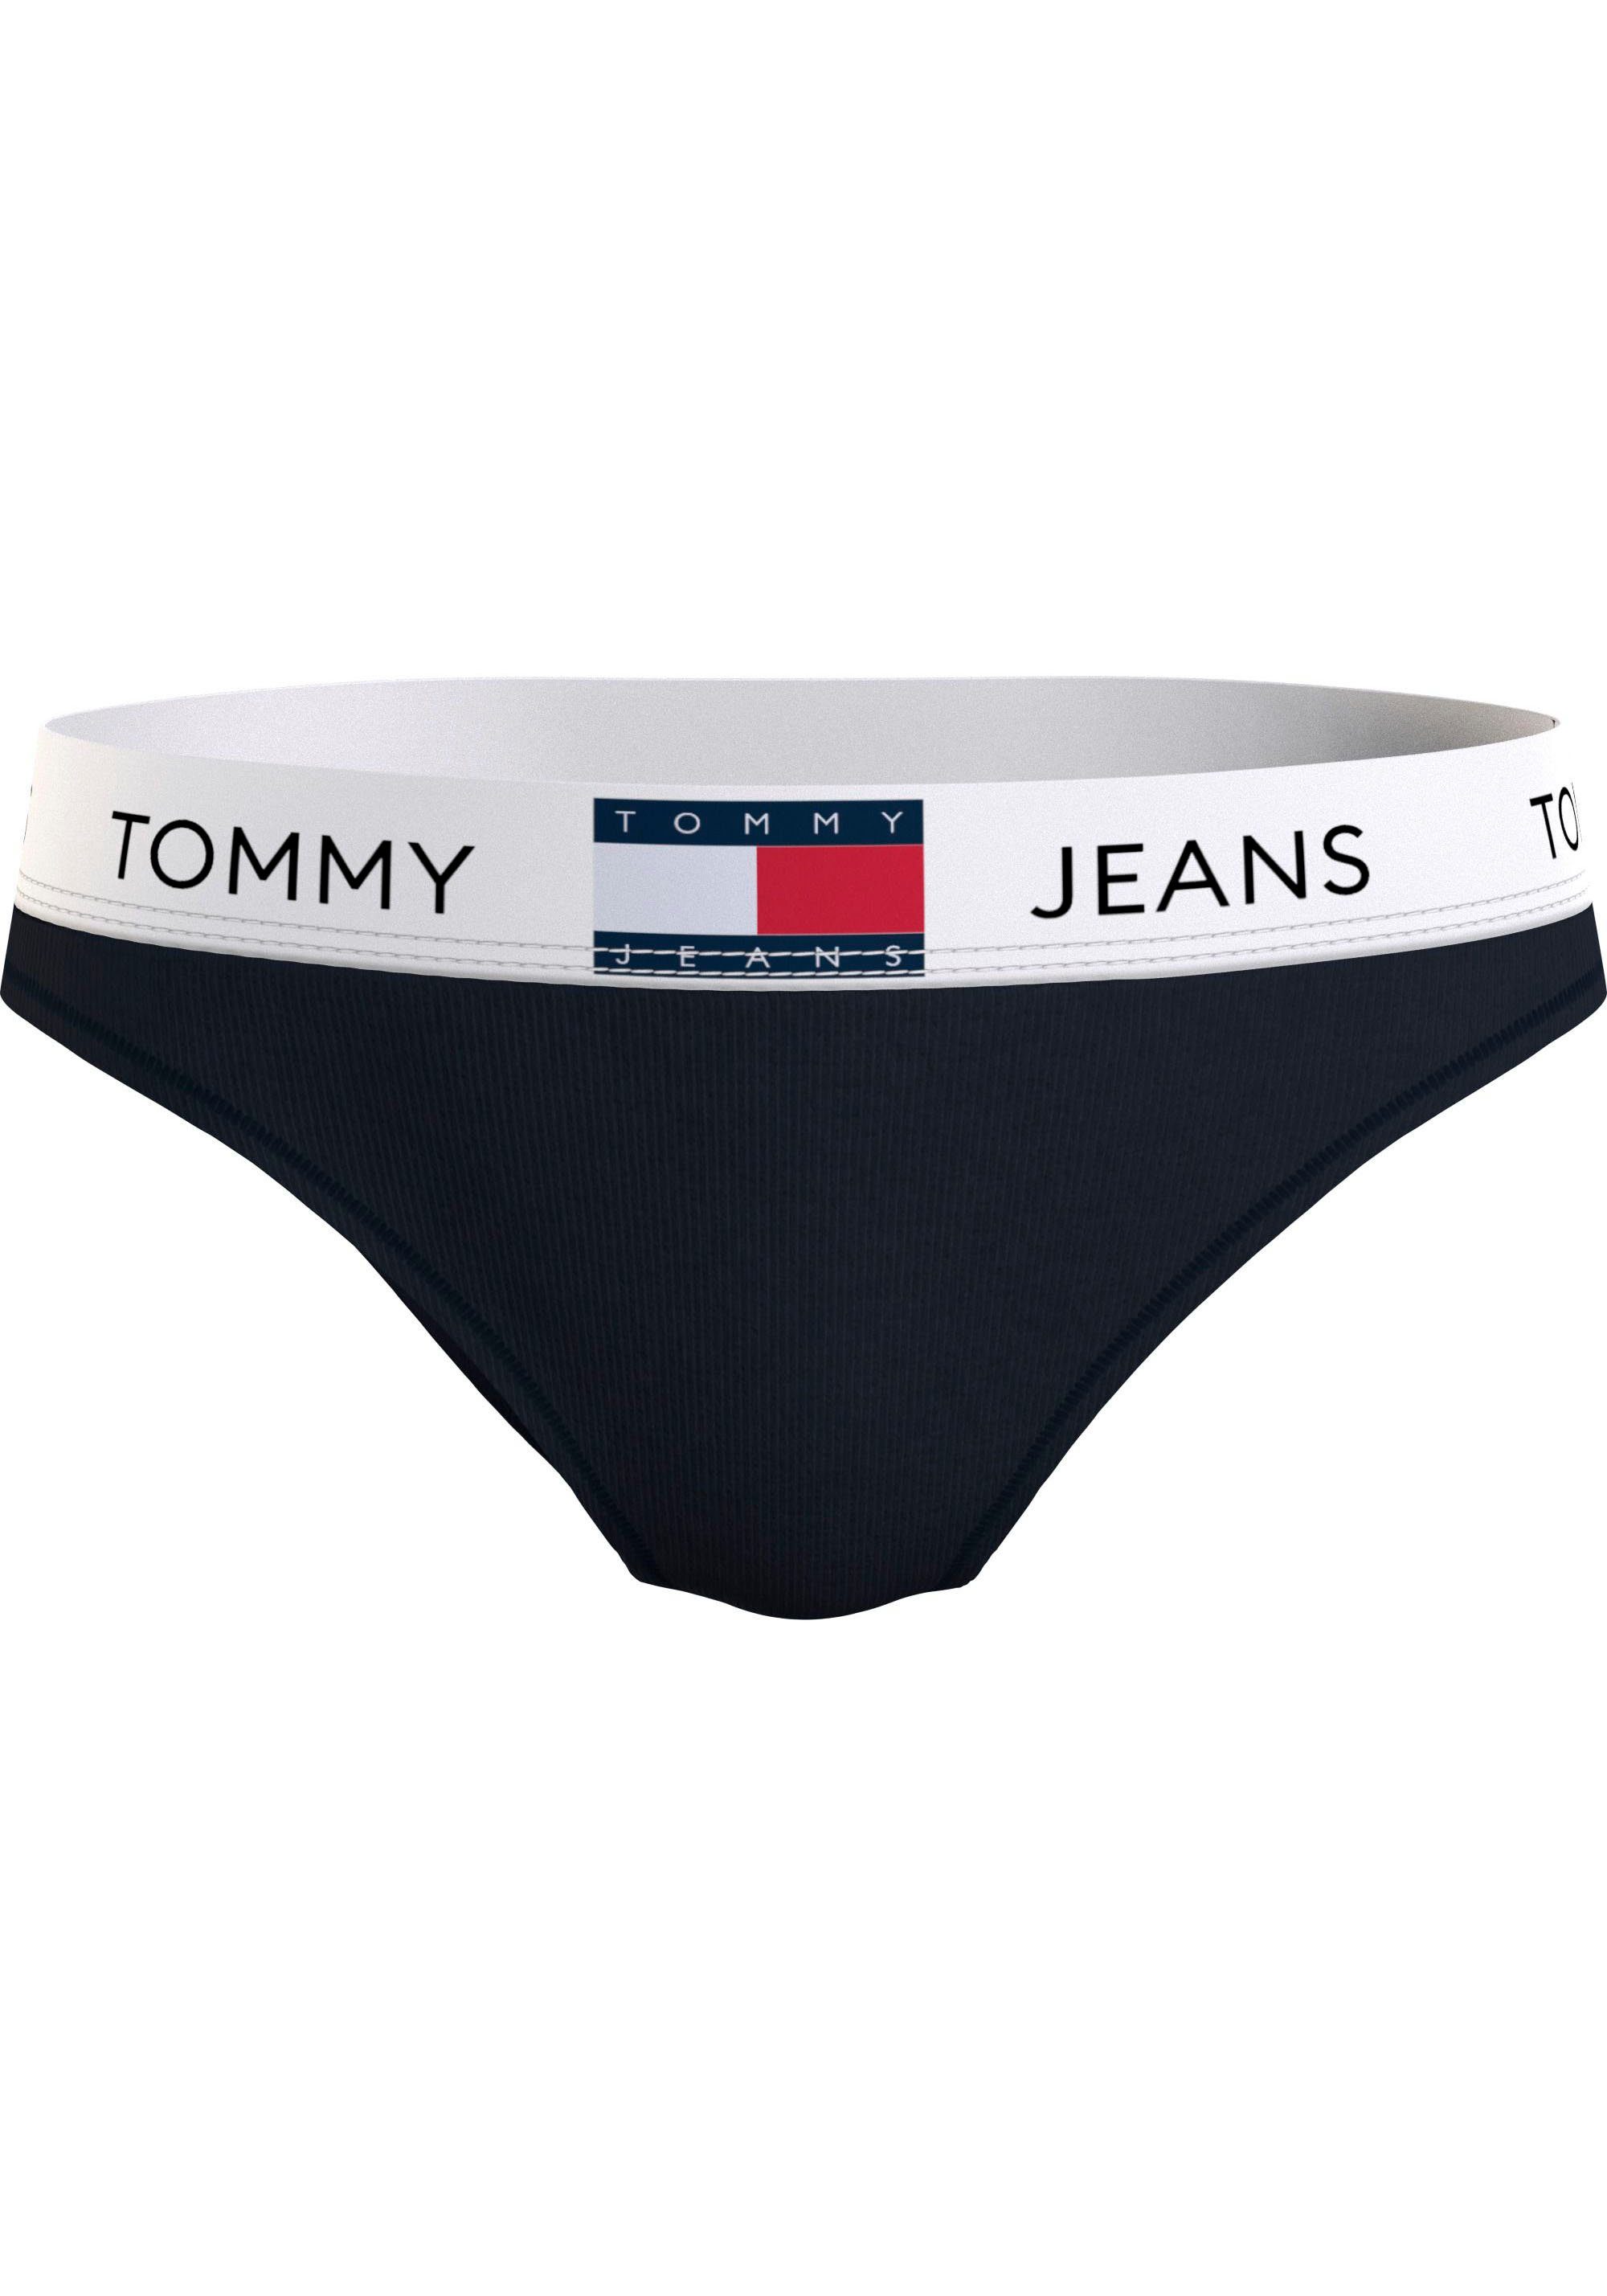 Tommy Hilfiger Underwear Bikinislip BIKINI mit Bund Black elastischem